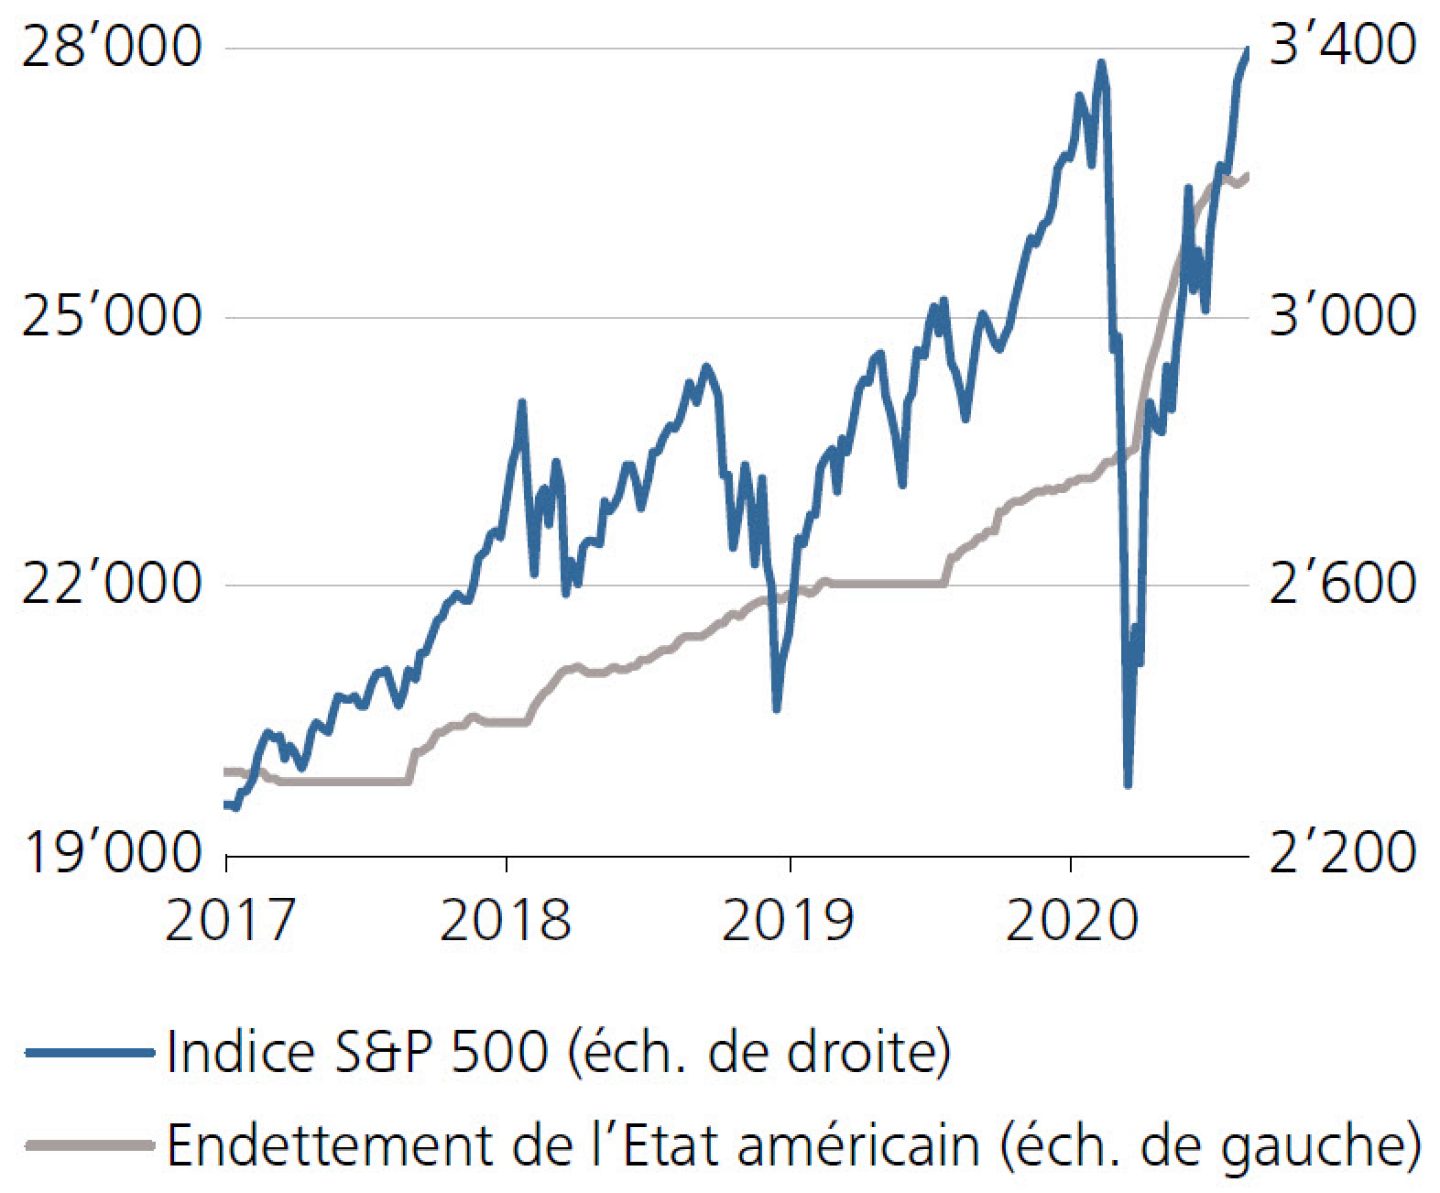 Indice S&P 500, endettement de l'Etat américain (en 1'000 milliards de dollars)